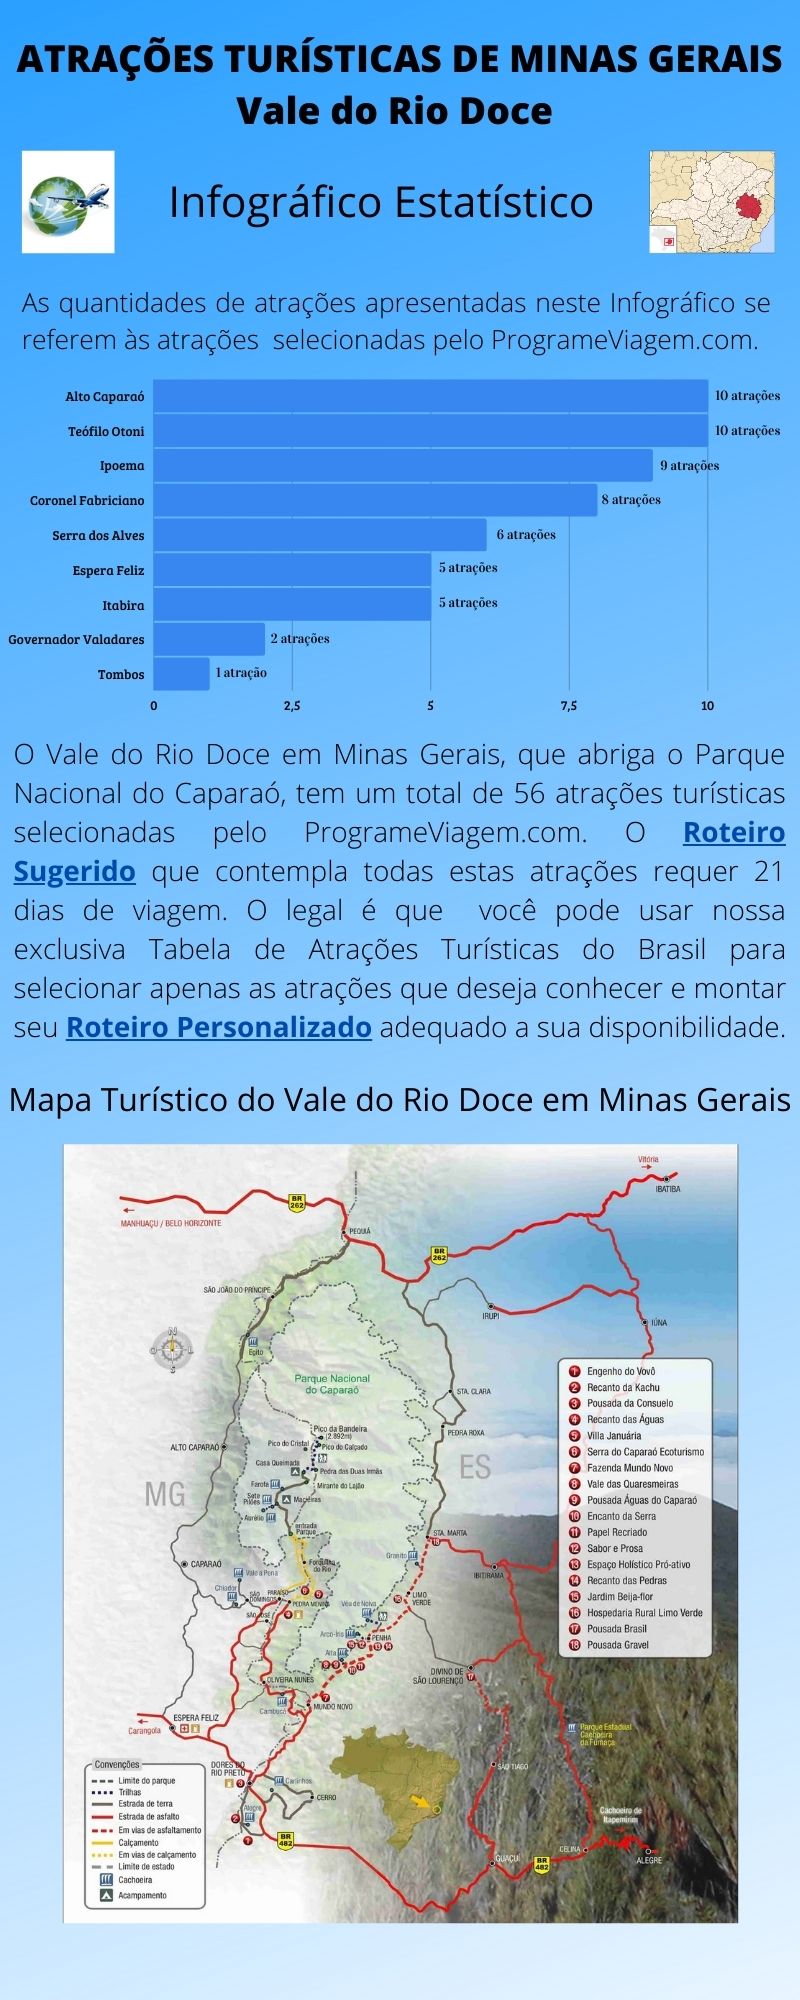 Infográfico Atrações Turísticas de Minas Gerais (Vale do Rio Doce)